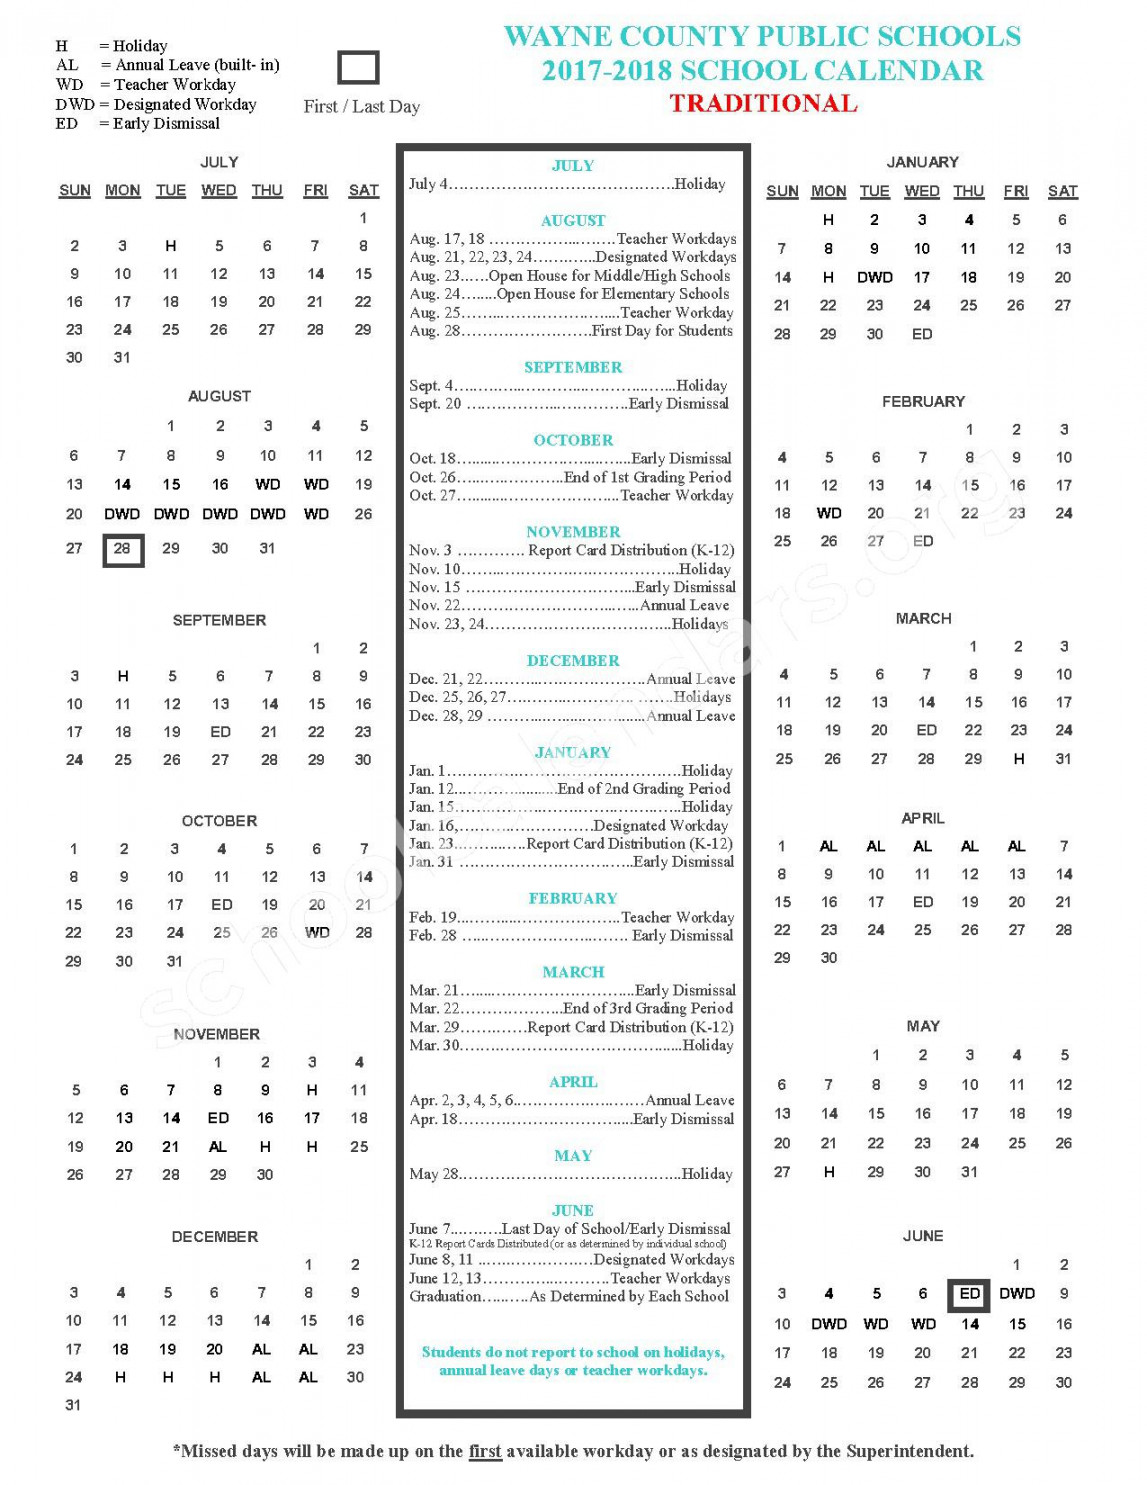 Wayne County Public Schools Calendars – Goldsboro, NC